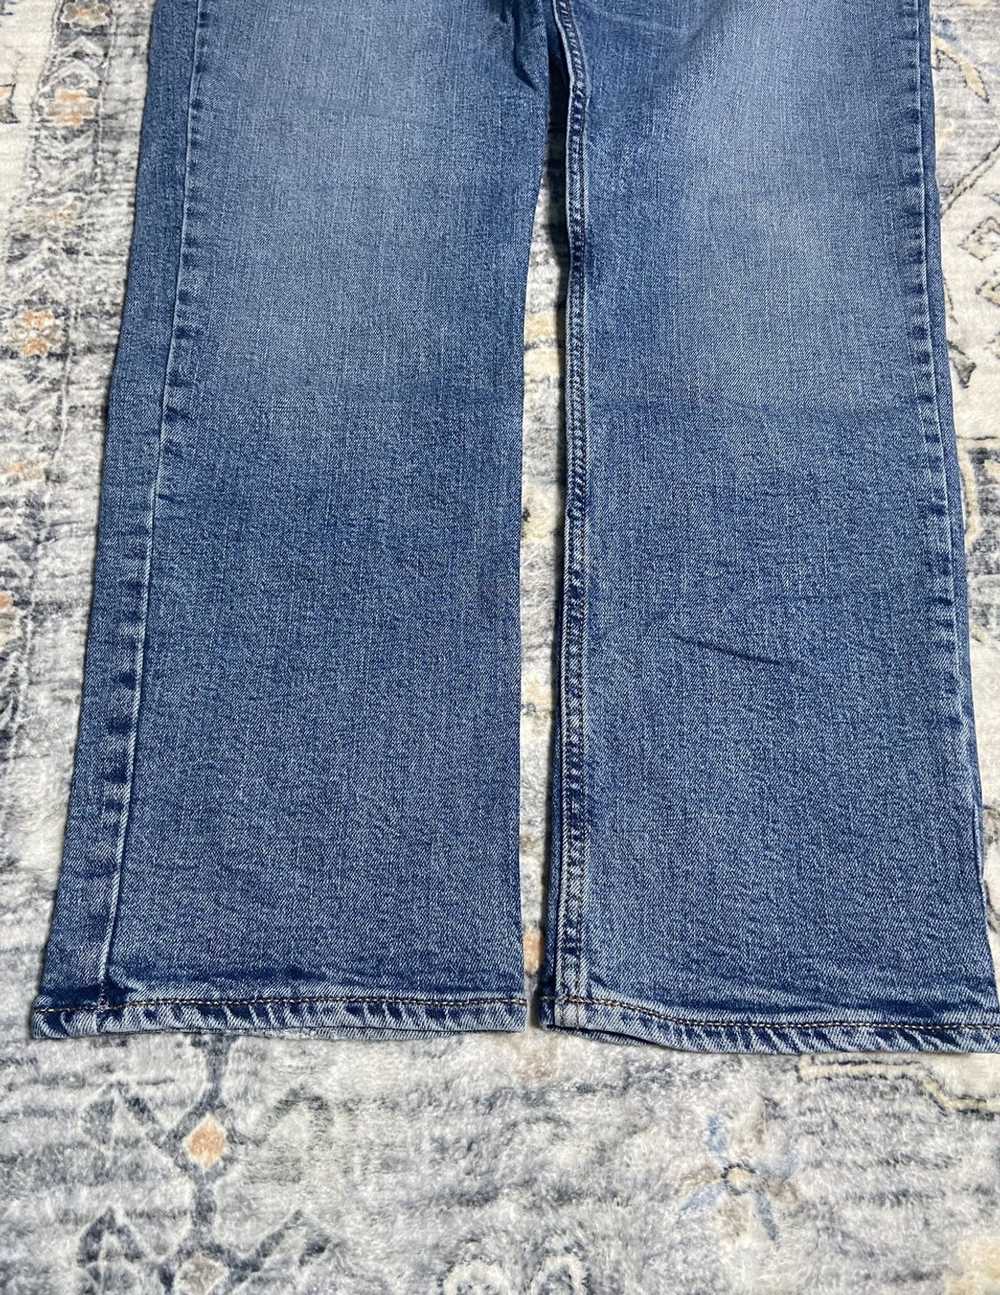 Jean × Old Navy × Vintage Vintage Denim Jeans - image 3